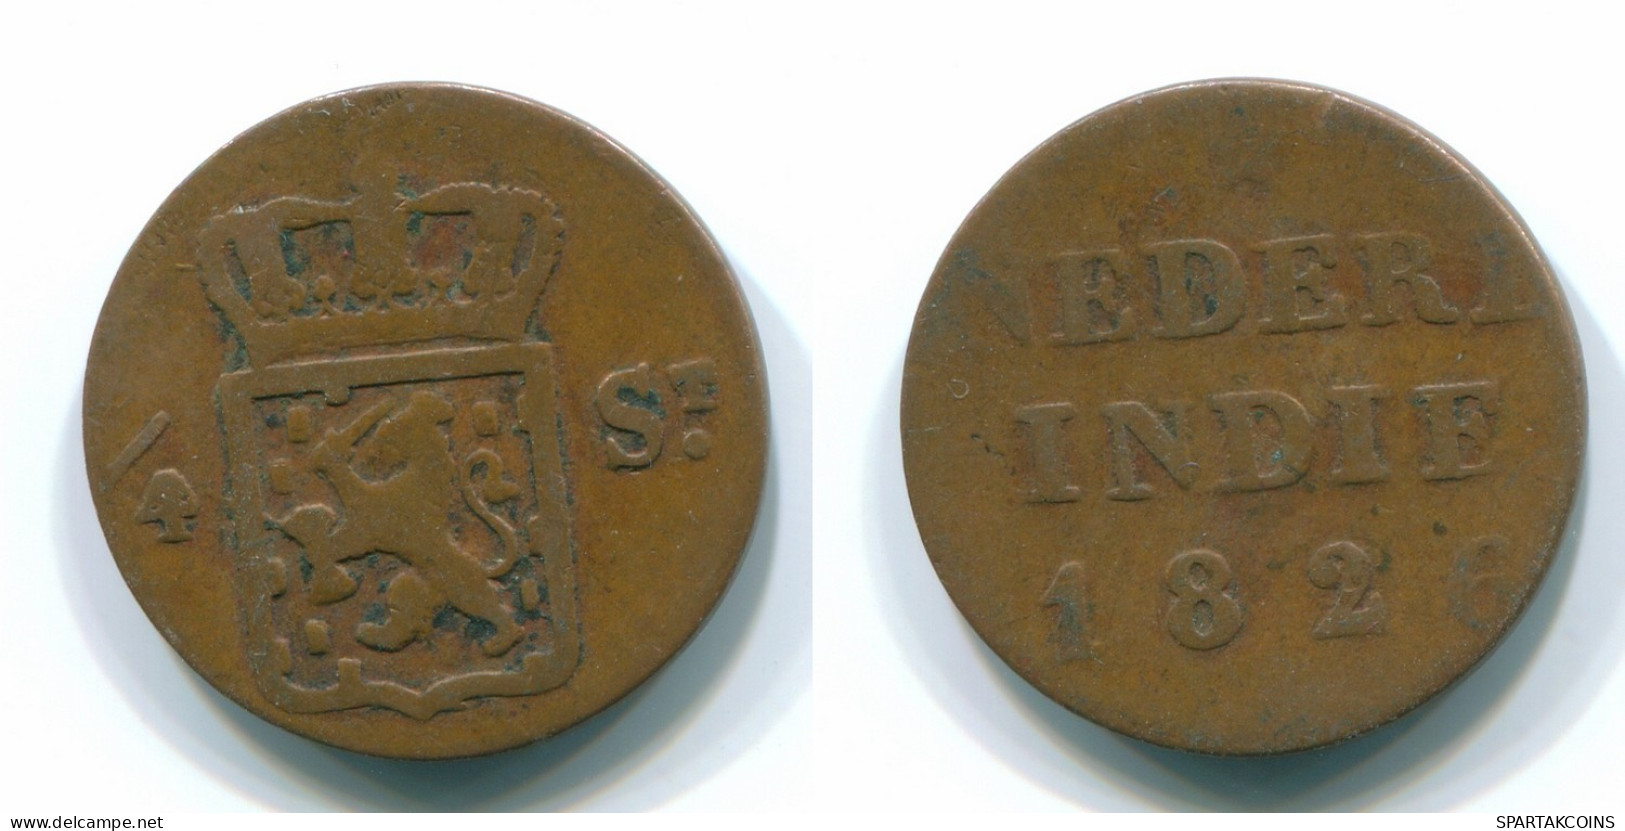 1/4 STUIVER 1826 SUMATRA INDIAS ORIENTALES DE LOS PAÍSES BAJOS Copper #S11675.E.A - Dutch East Indies